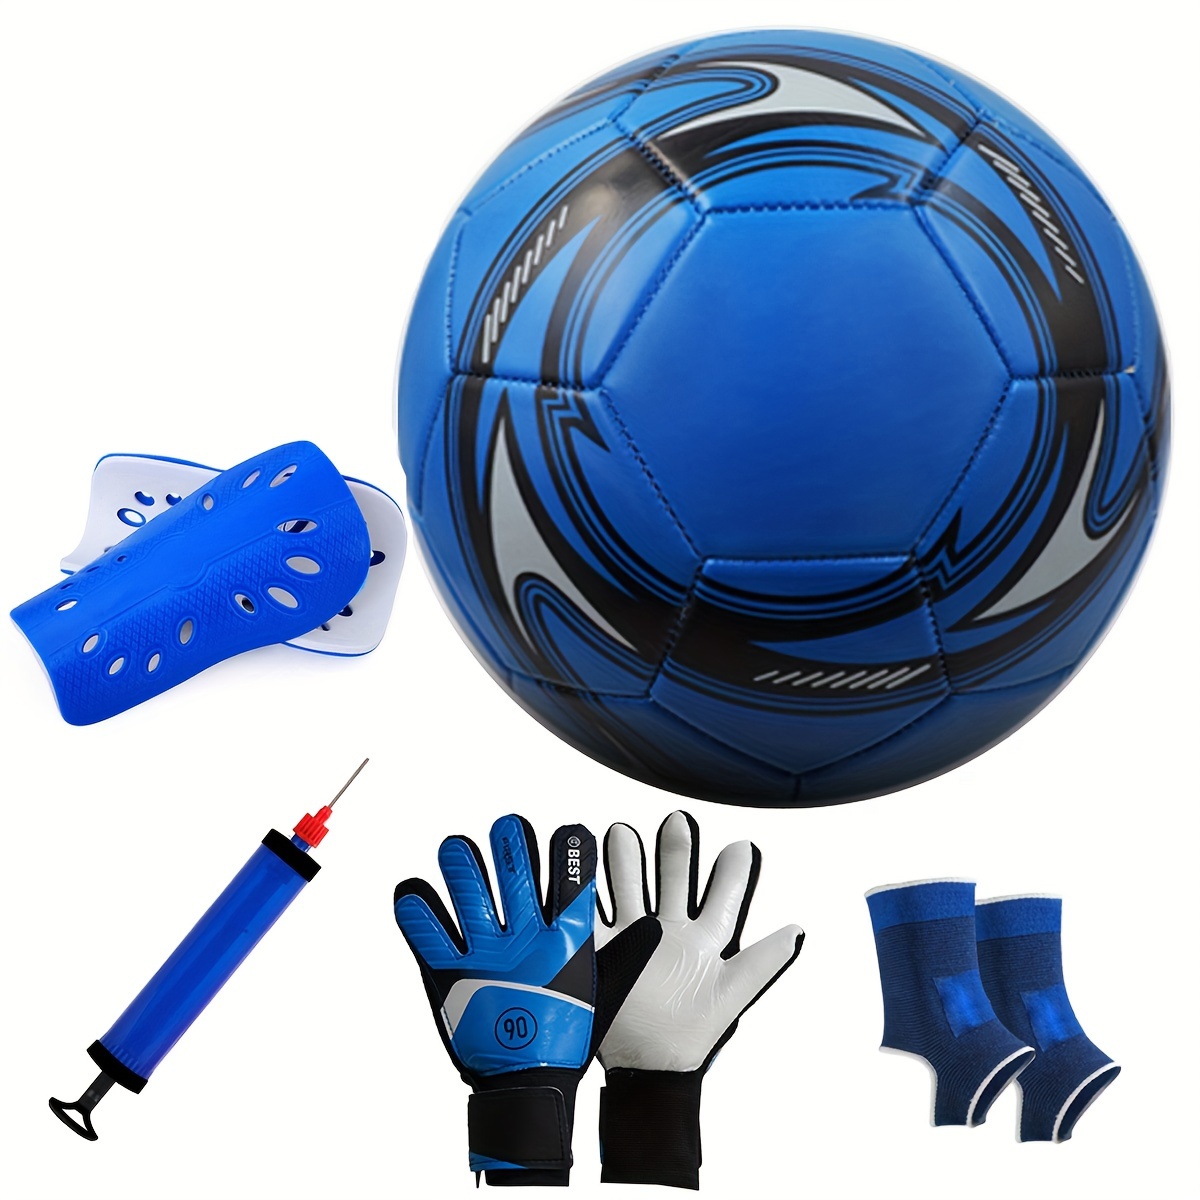 Accessoires Foot : Ballons, Protège Tibia, Gants et Equipement Gardien